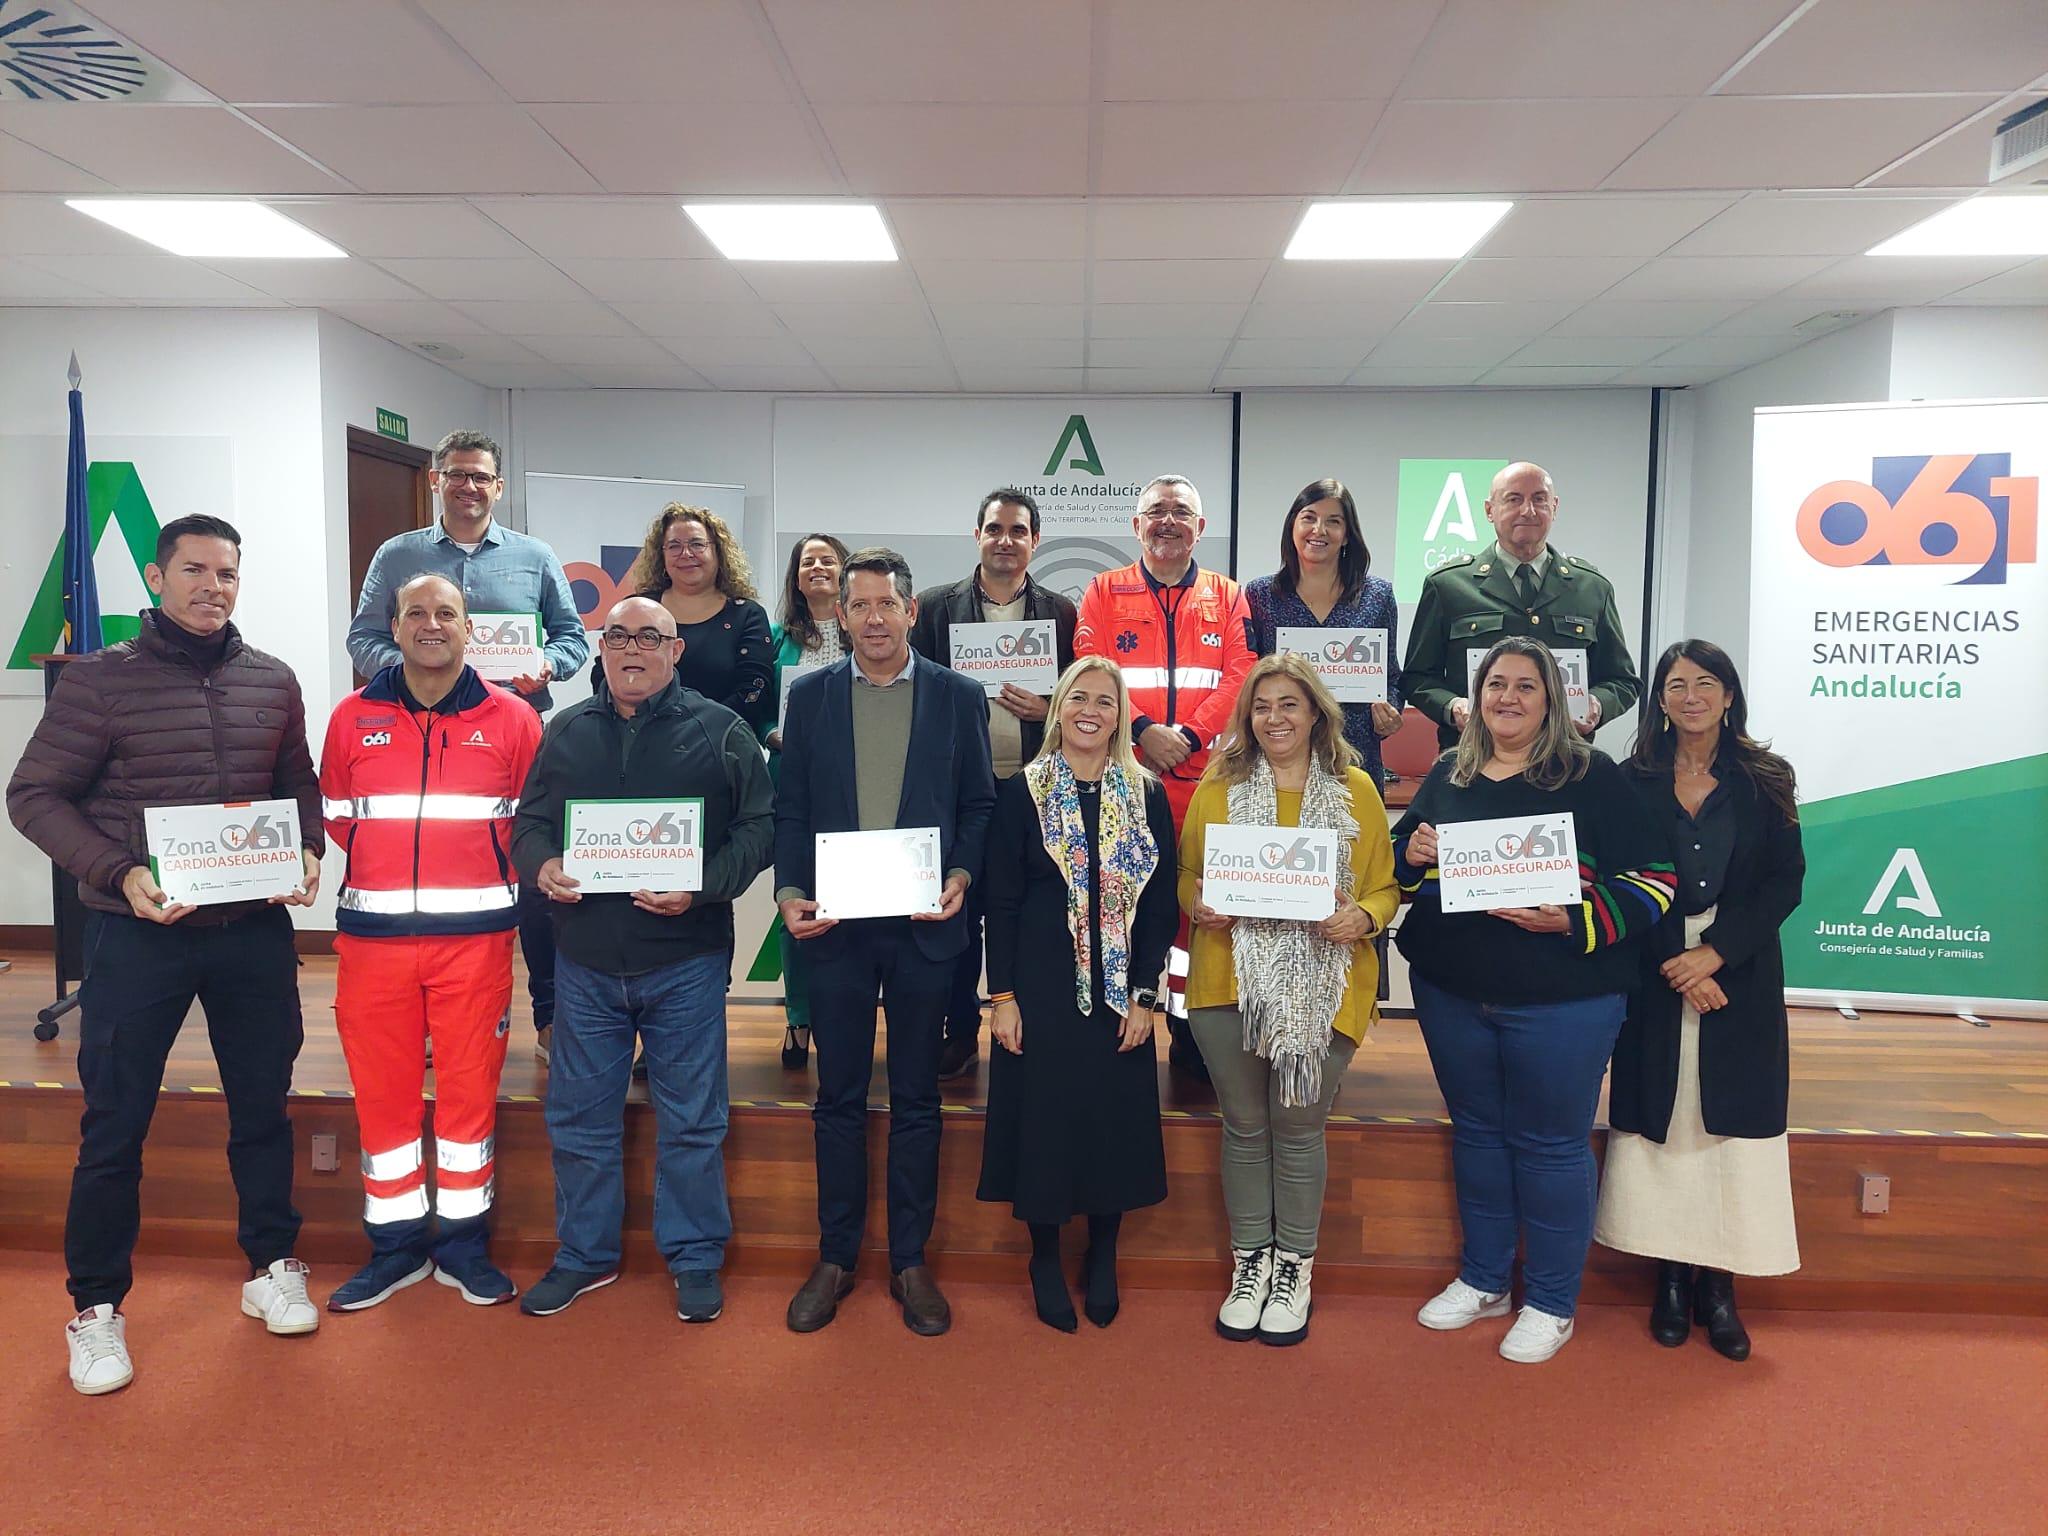 El 061 reconoce 87 nuevas zonas cardioaseguradas en la provincia, 77 de ellas en Jerez